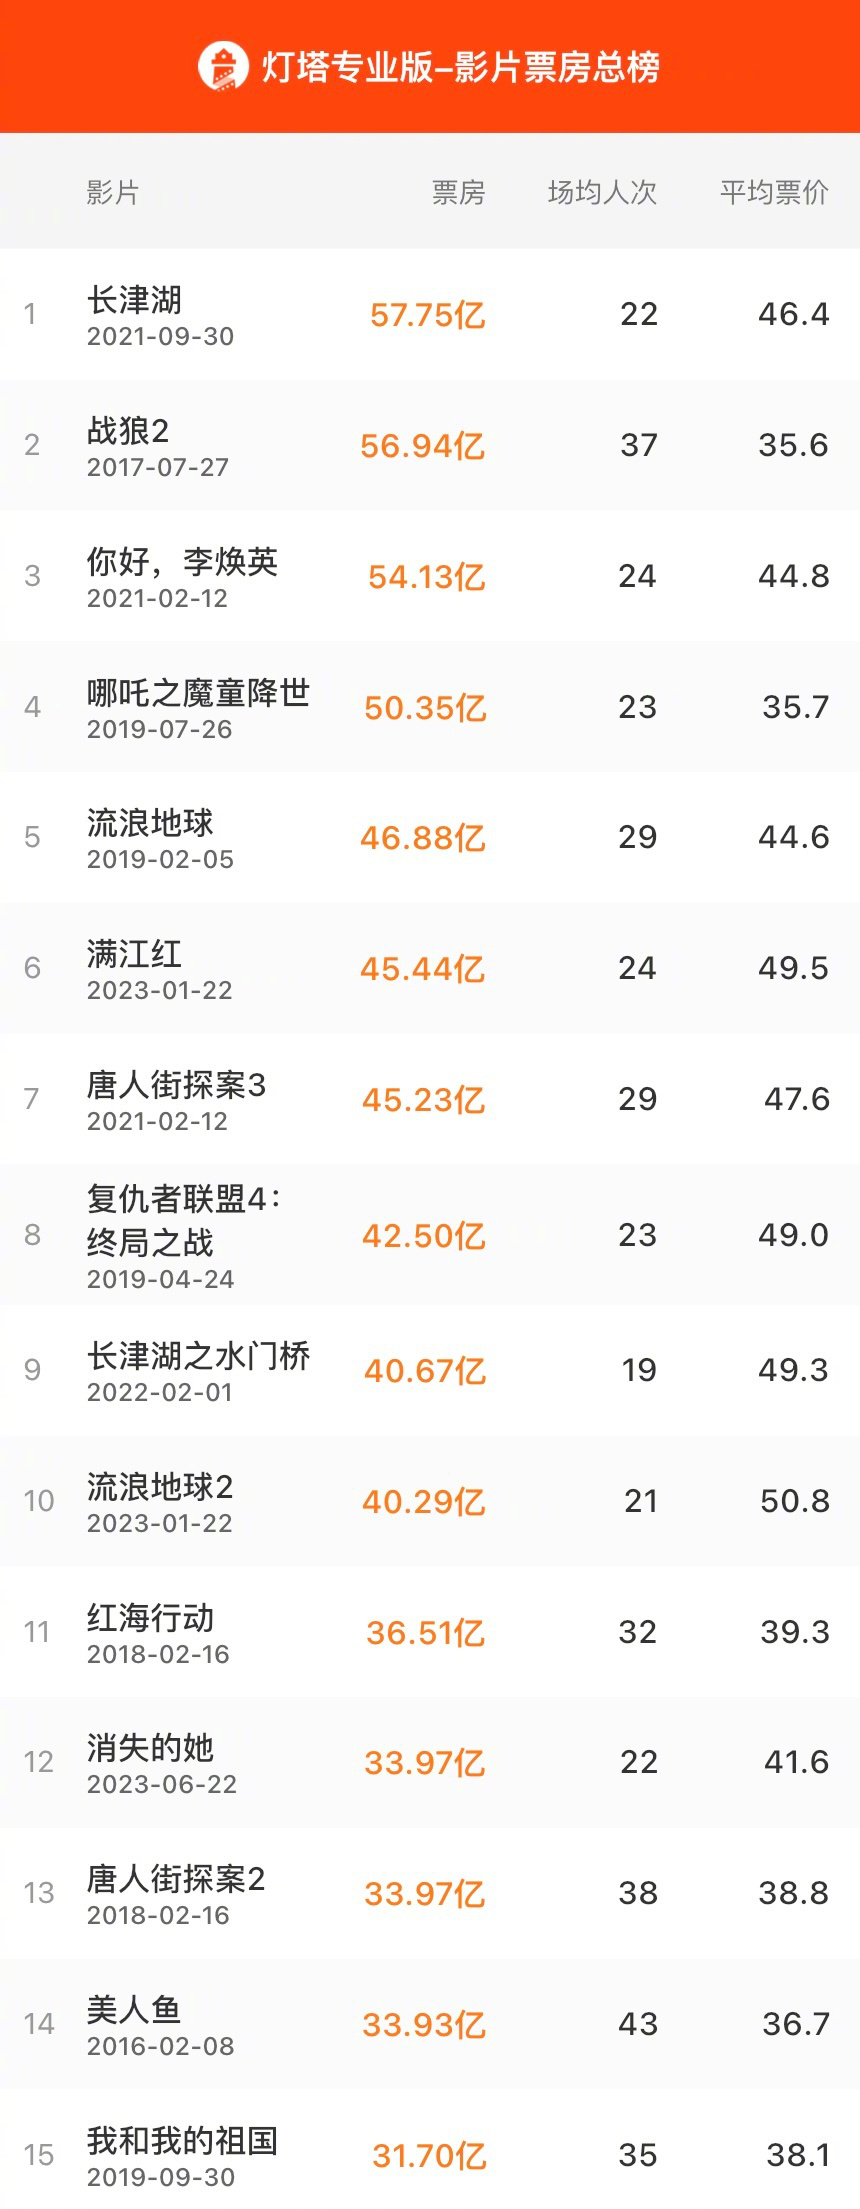 《消失的她》超《唐探2》 成中国影史票房榜第12